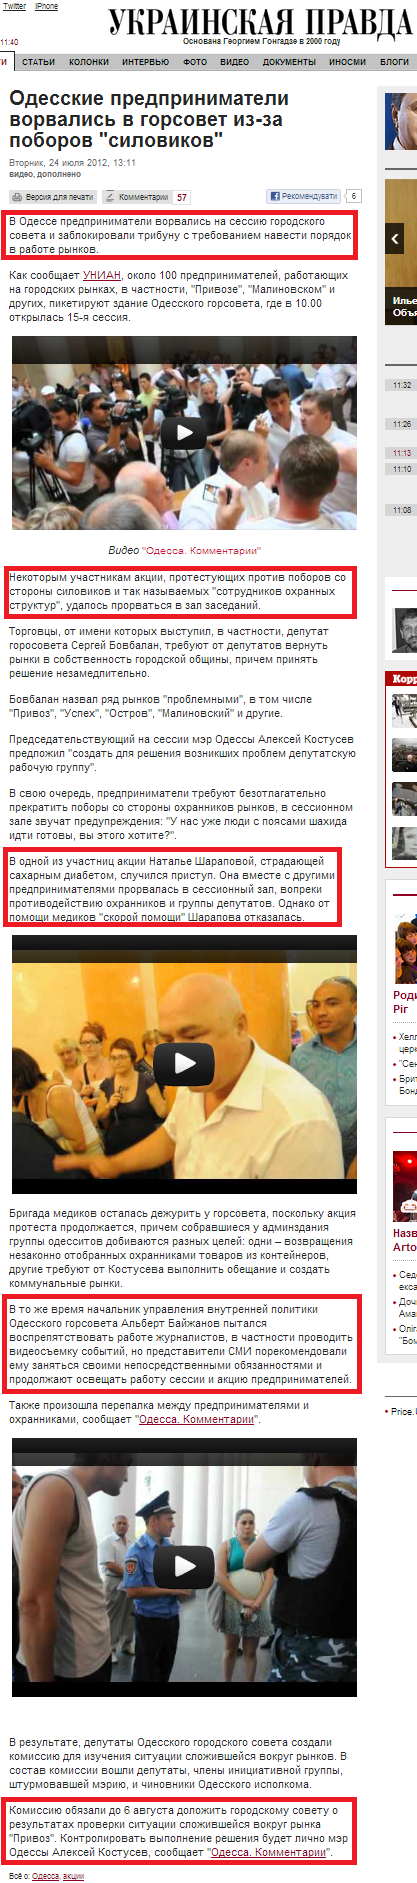 http://www.pravda.com.ua/rus/news/2012/07/24/6969401/